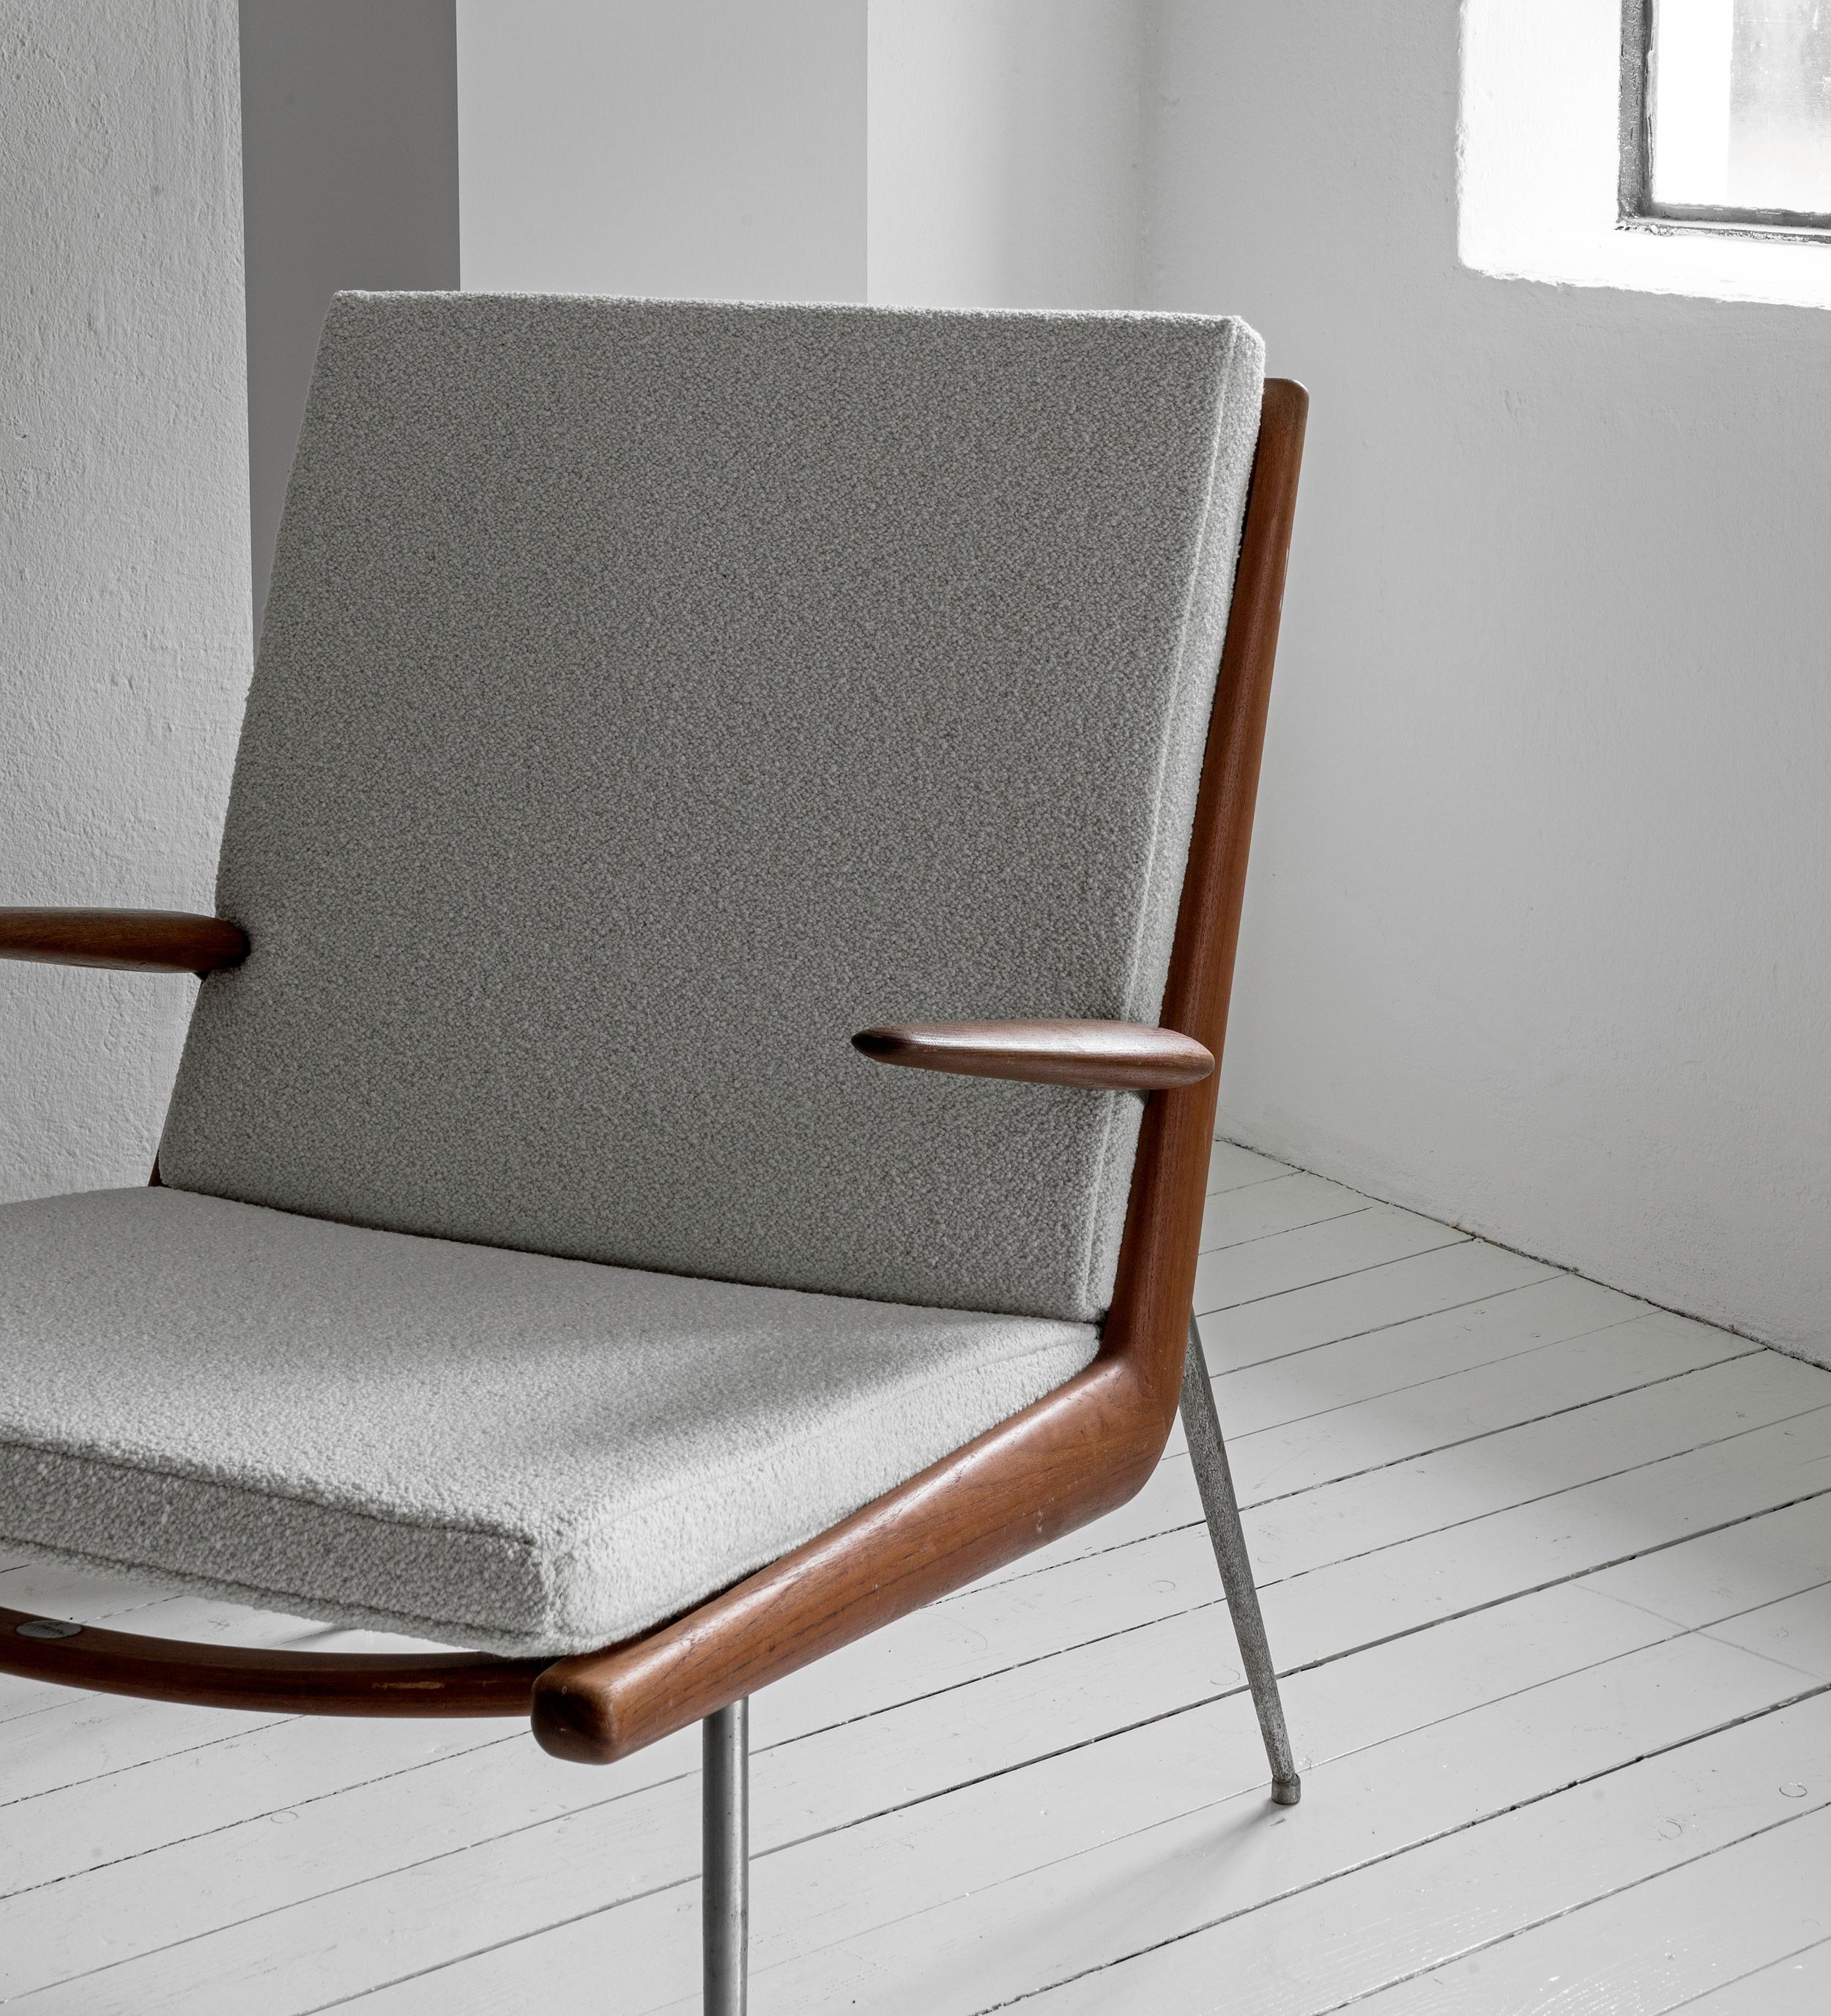 Une belle paire de fauteuils Boomerang estampillés en l de Peter Hvidt & Orla Molgaard-Nielsen conçus en 1956 et édités par France & Søn entre 1958 et 1966.
Cette paire date de cette période 1958 et 1966. 

Le cadre en teck est en très bon état et